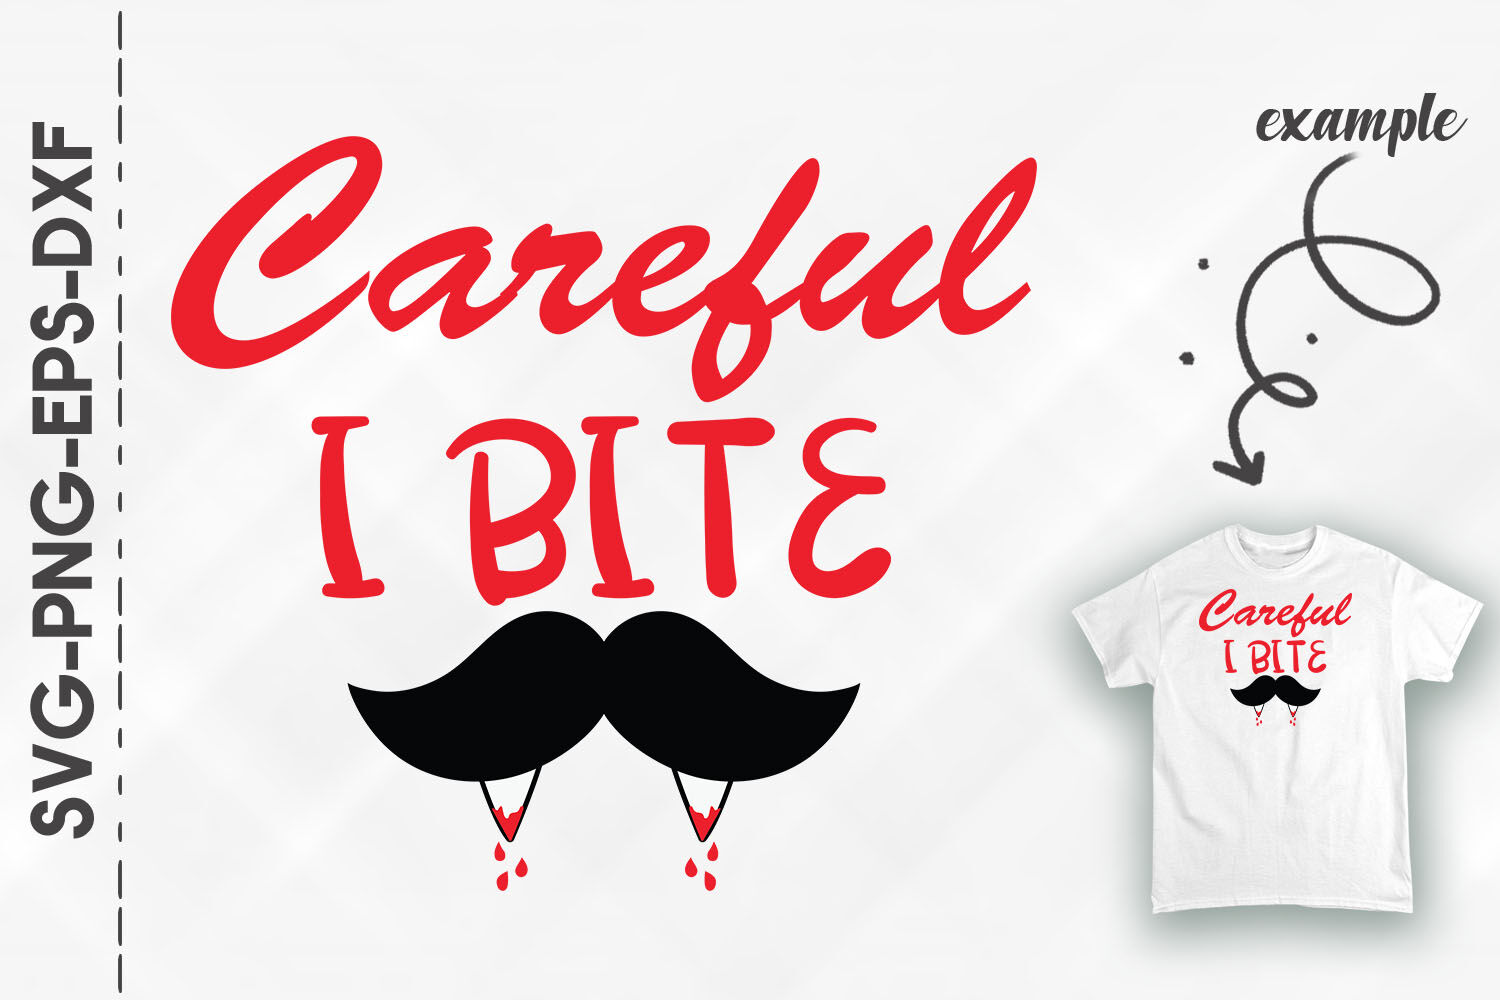 Careful_i_bite